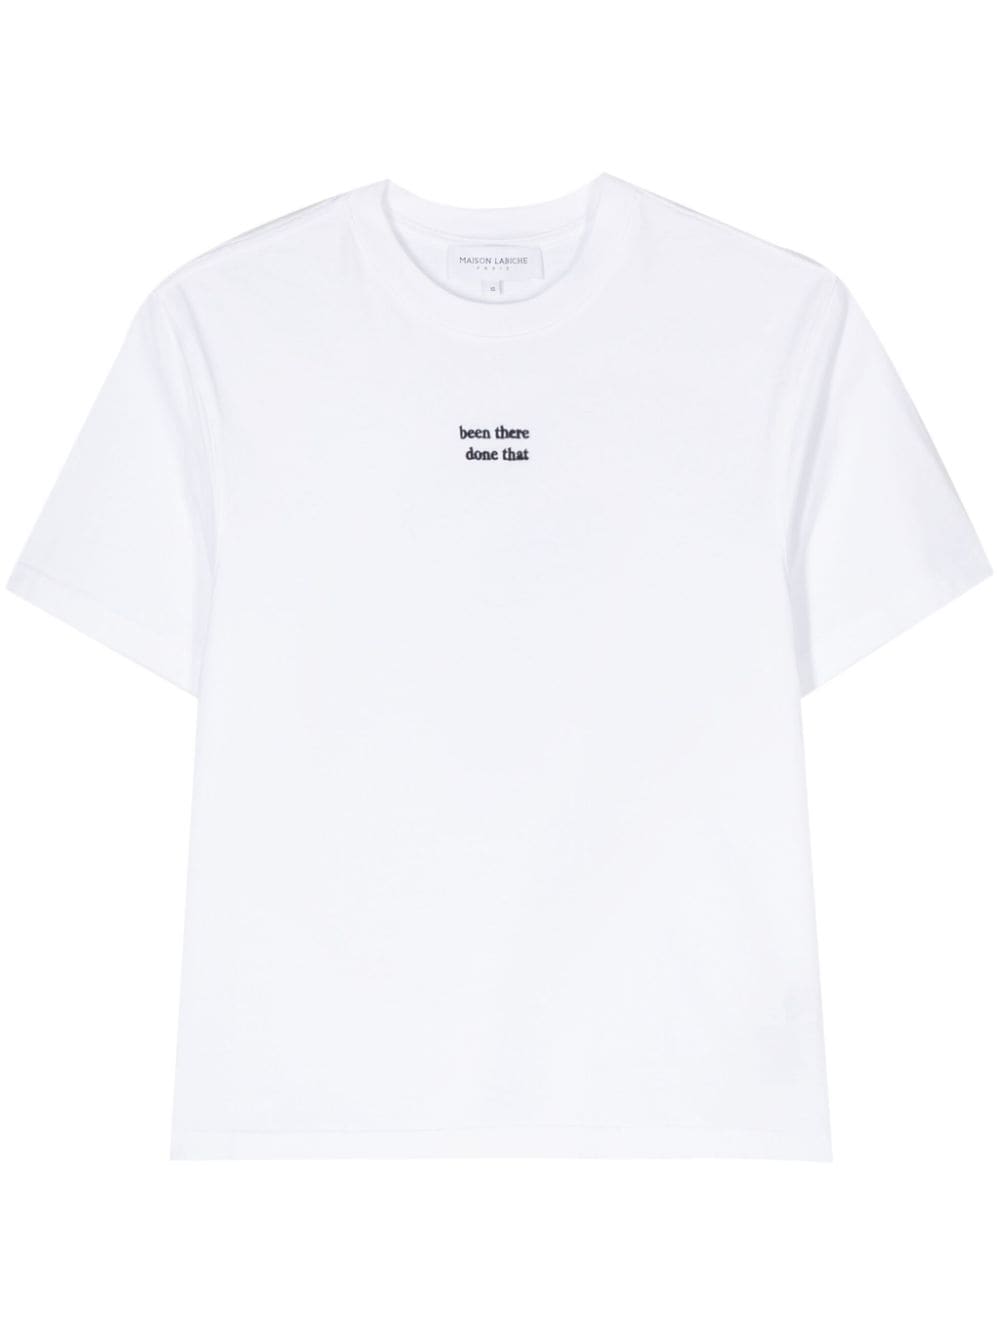 Popincourt embroidered-slogan T-shirt